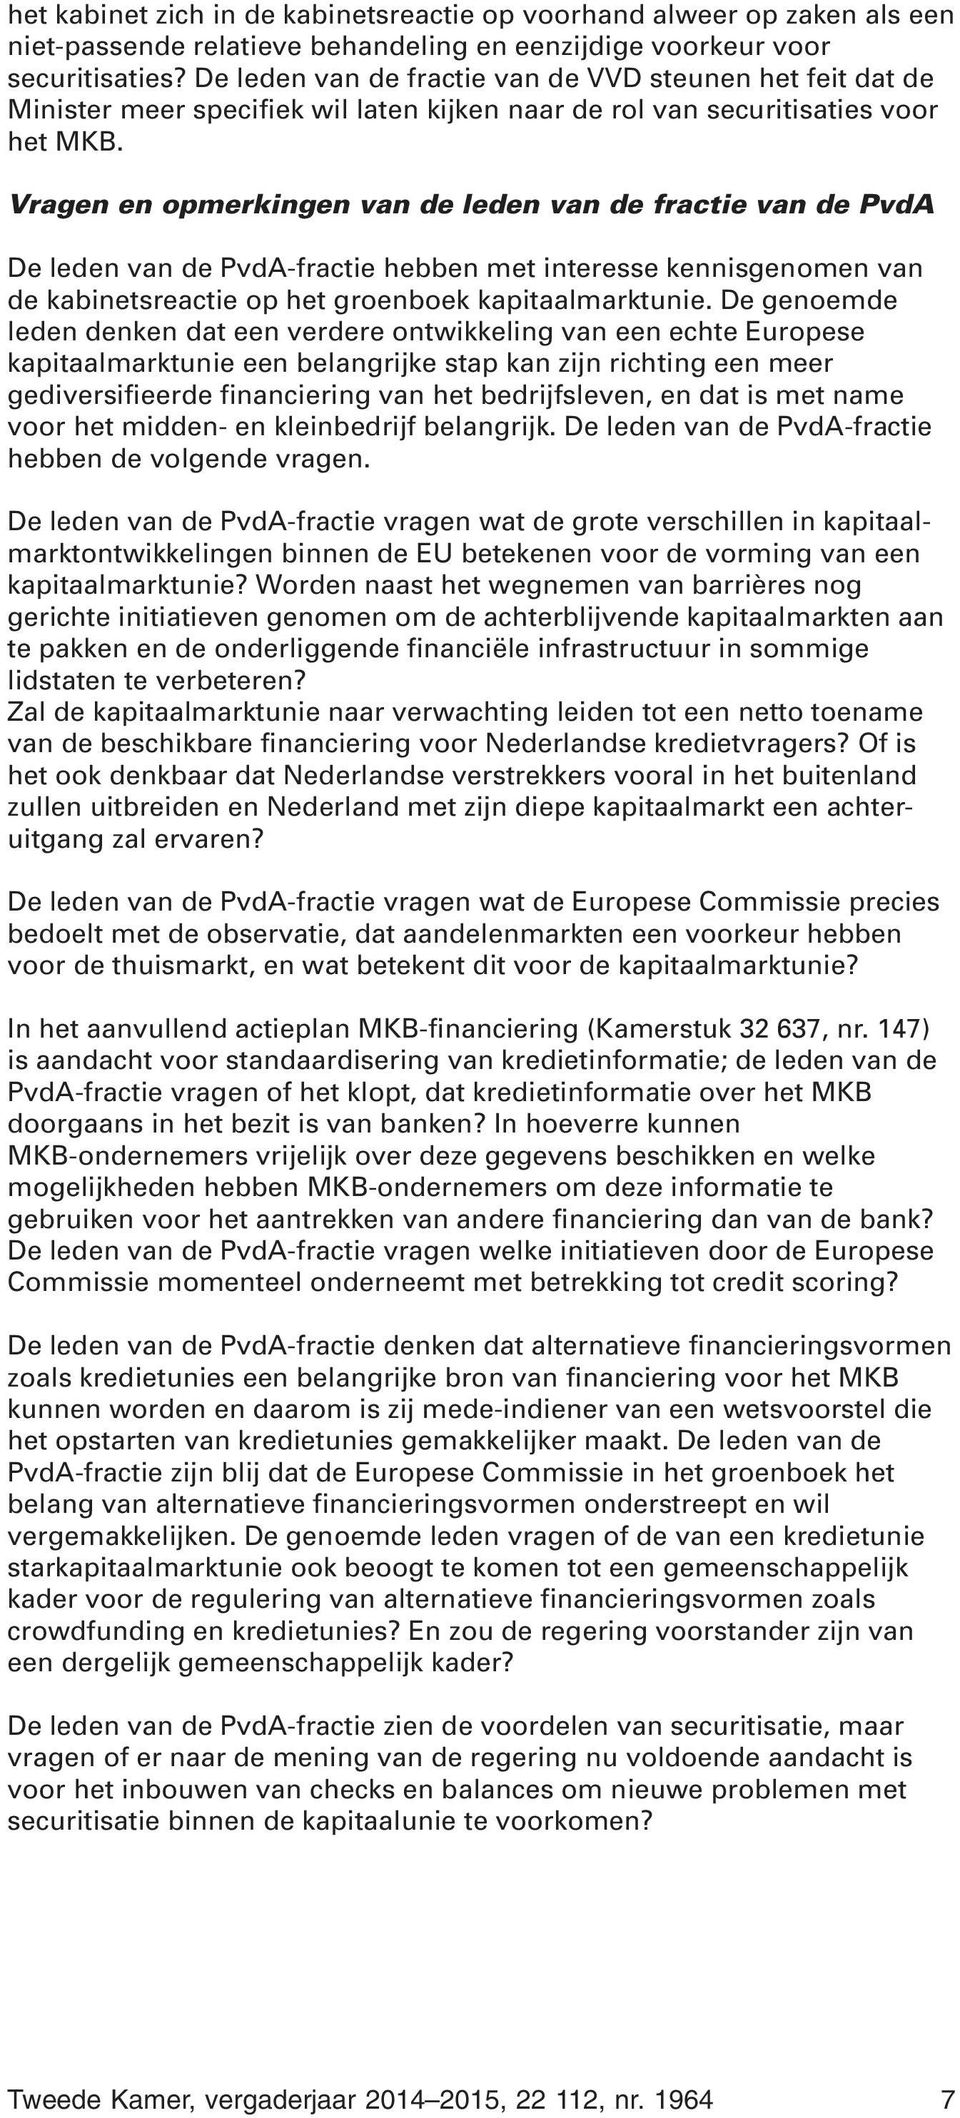 Vragen en opmerkingen van de leden van de fractie van de PvdA De leden van de PvdA-fractie hebben met interesse kennisgenomen van de kabinetsreactie op het groenboek kapitaalmarktunie.